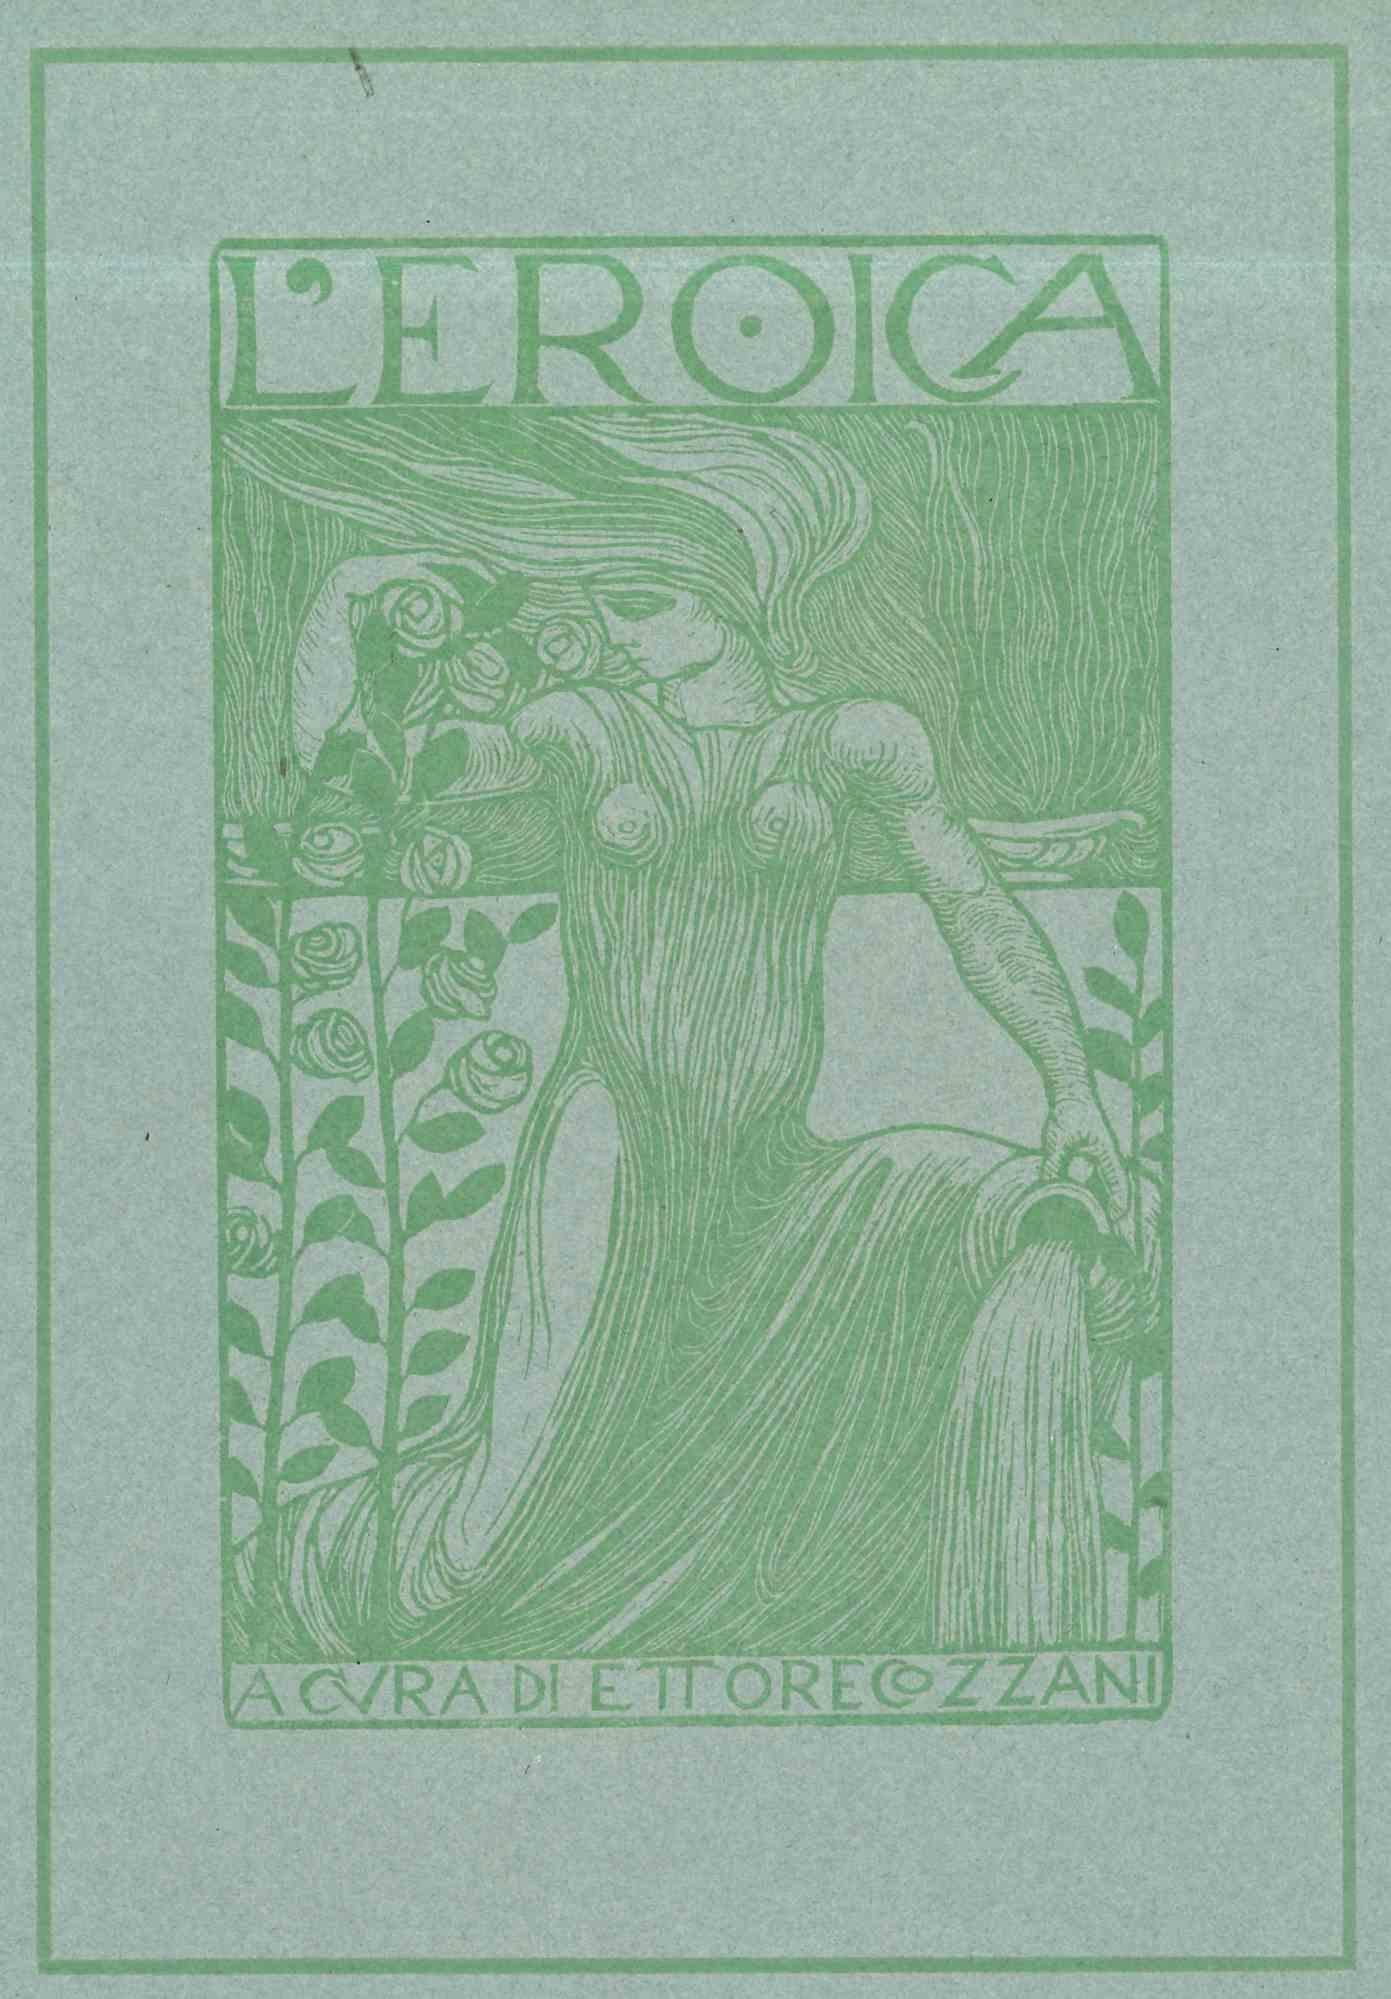 Couverture pour L'Eroica - gravure sur bois par Ettore di Giorgio - Début du XXe siècle